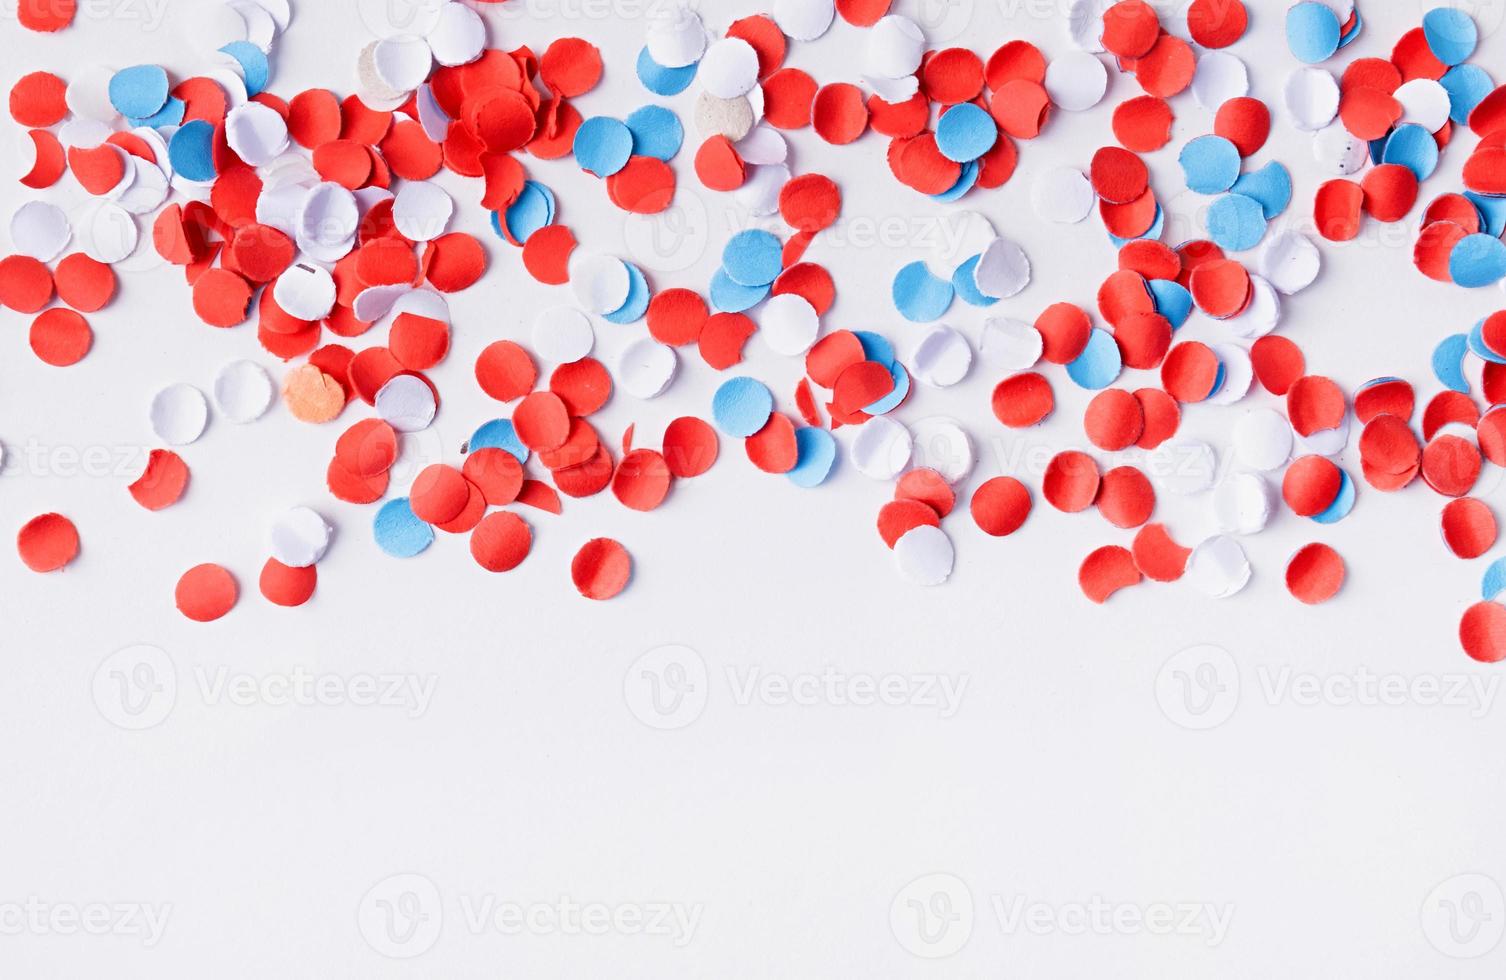 kleurrijk cirkel vorm confetti van versnipperd papier , decoraties voor vierde juli foto